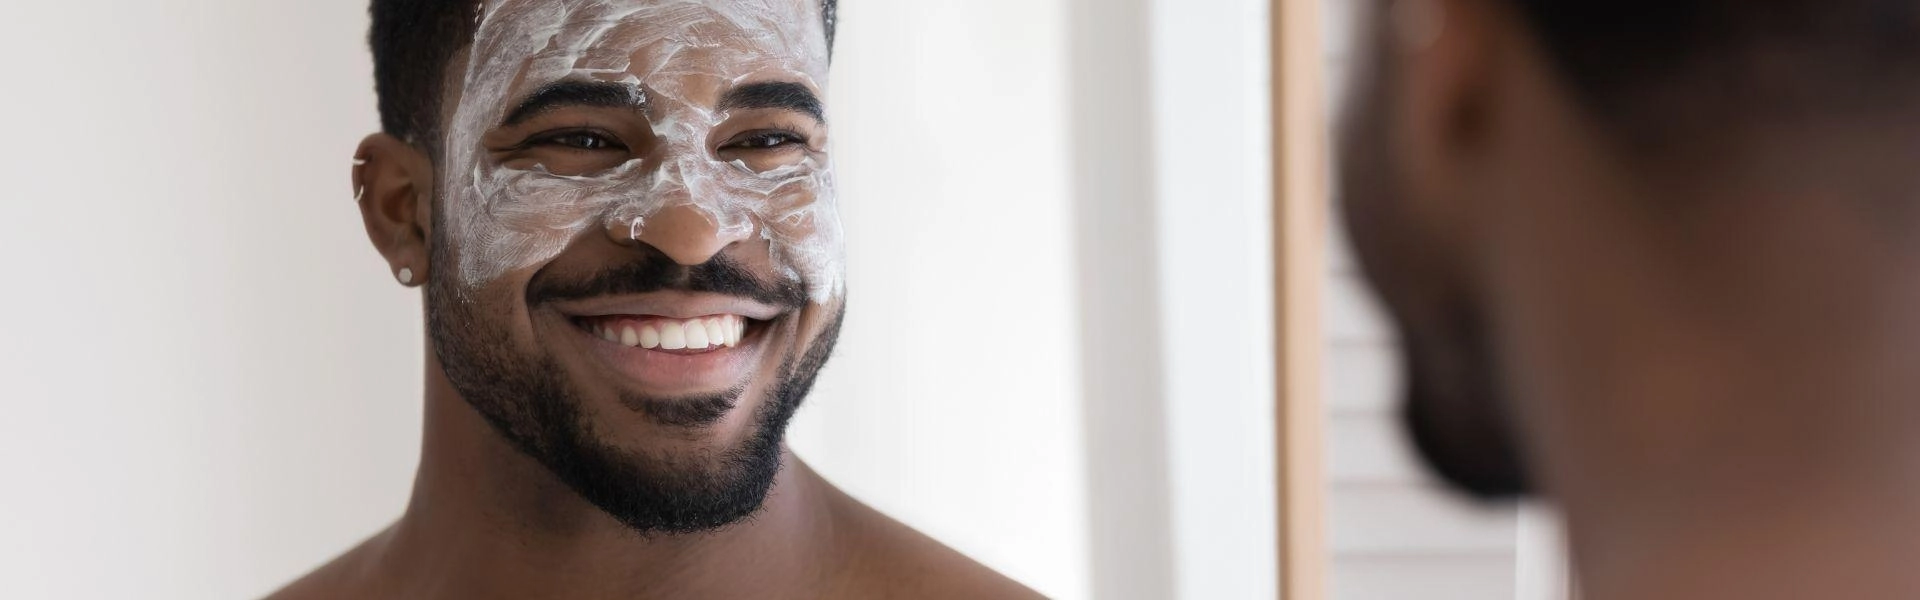 Homem negro sorrindo ao se olhar no espelho usando cosméticos masculinos.